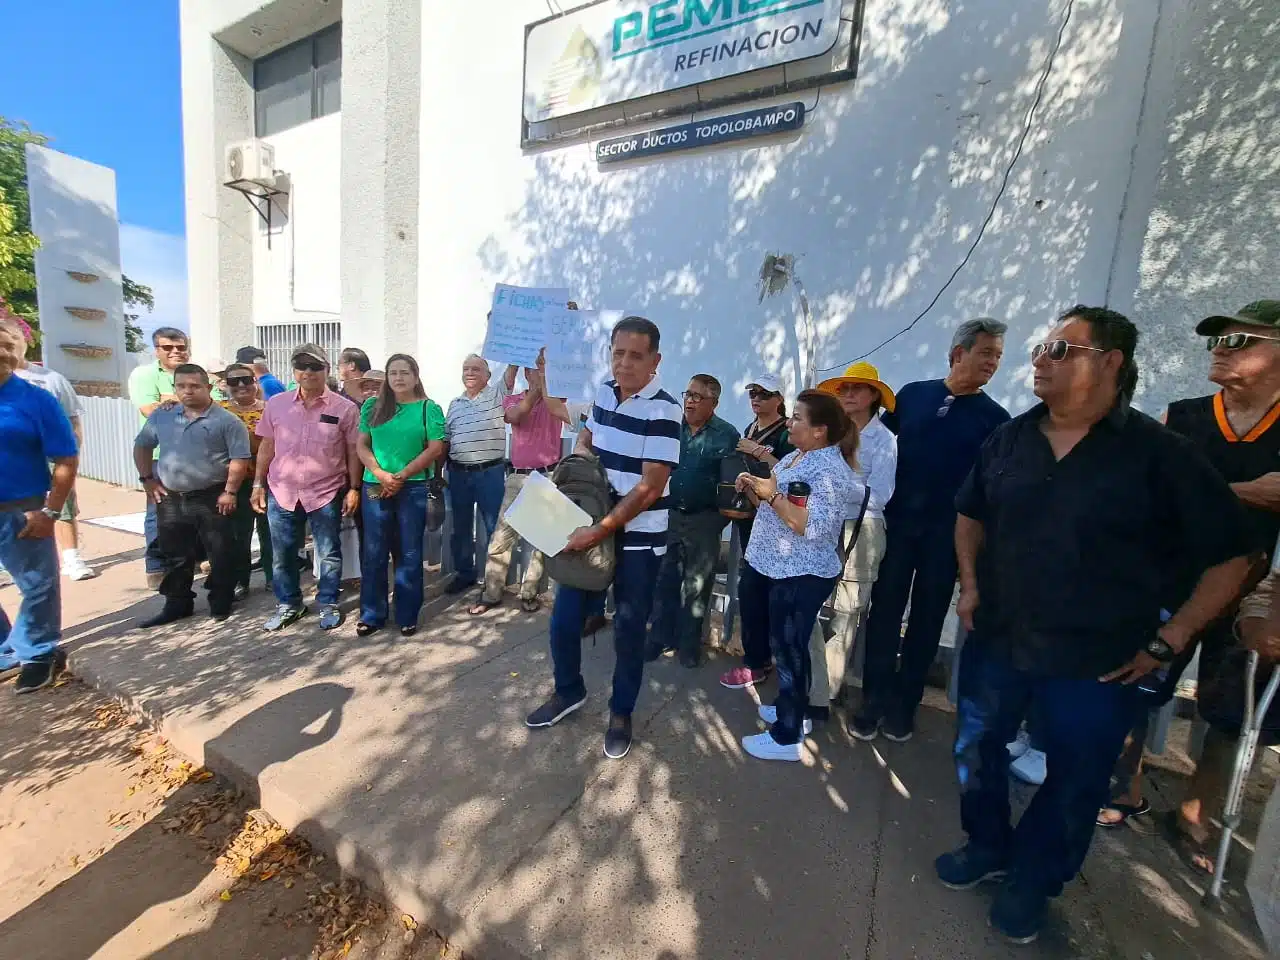 Trabajadores de Pemex manifestándose